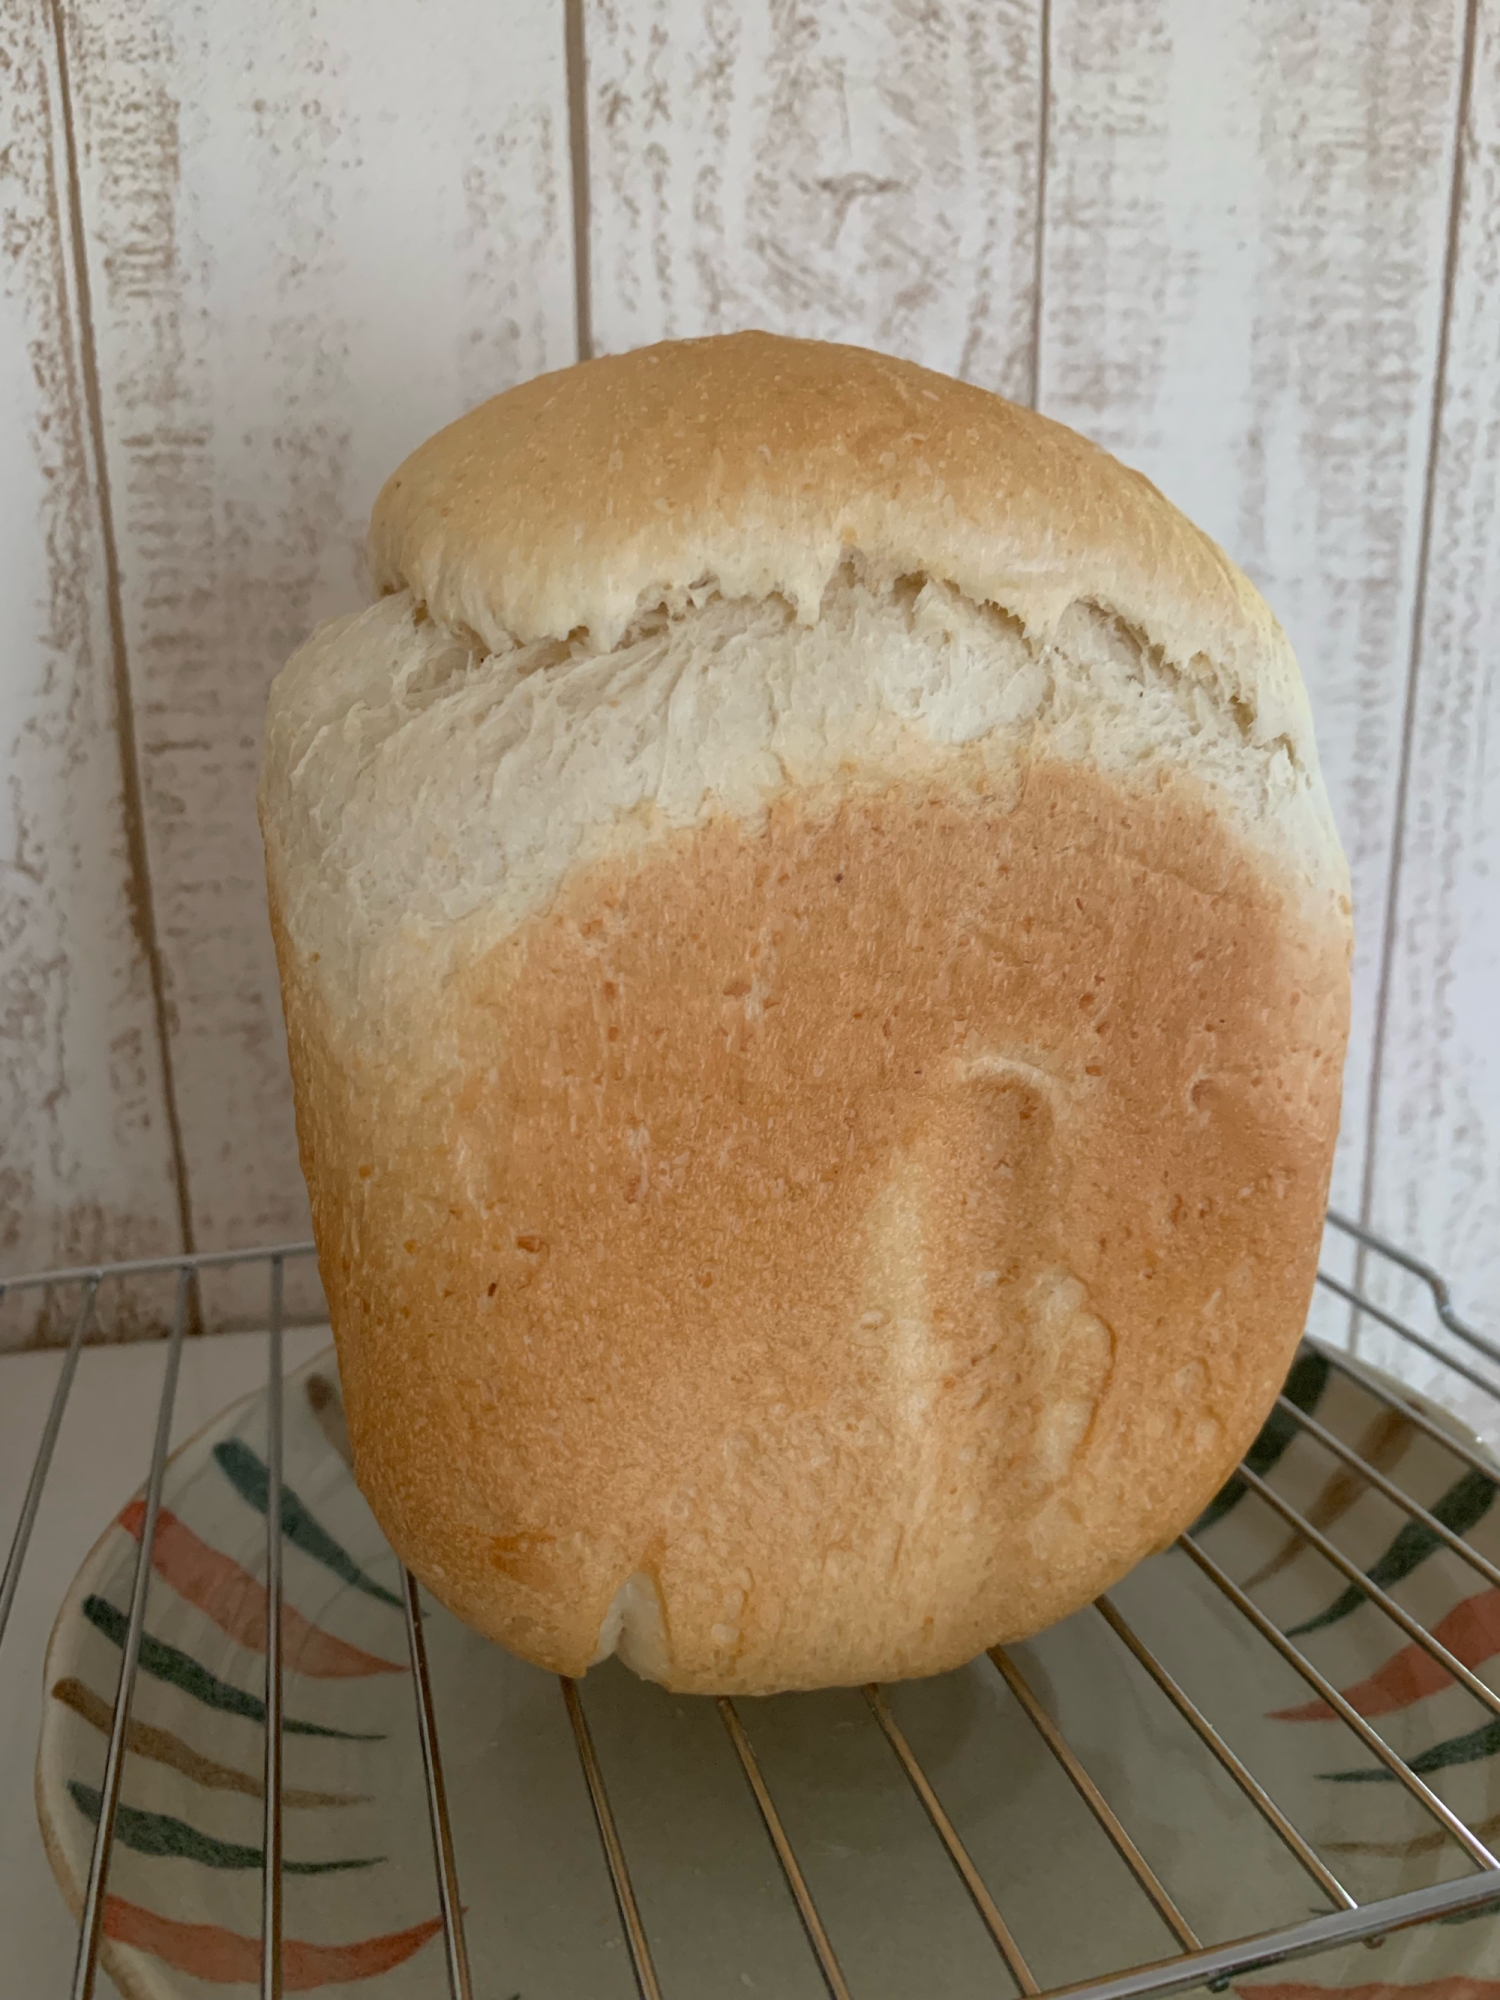 ♡HBで簡単♡オートミール入り食パン